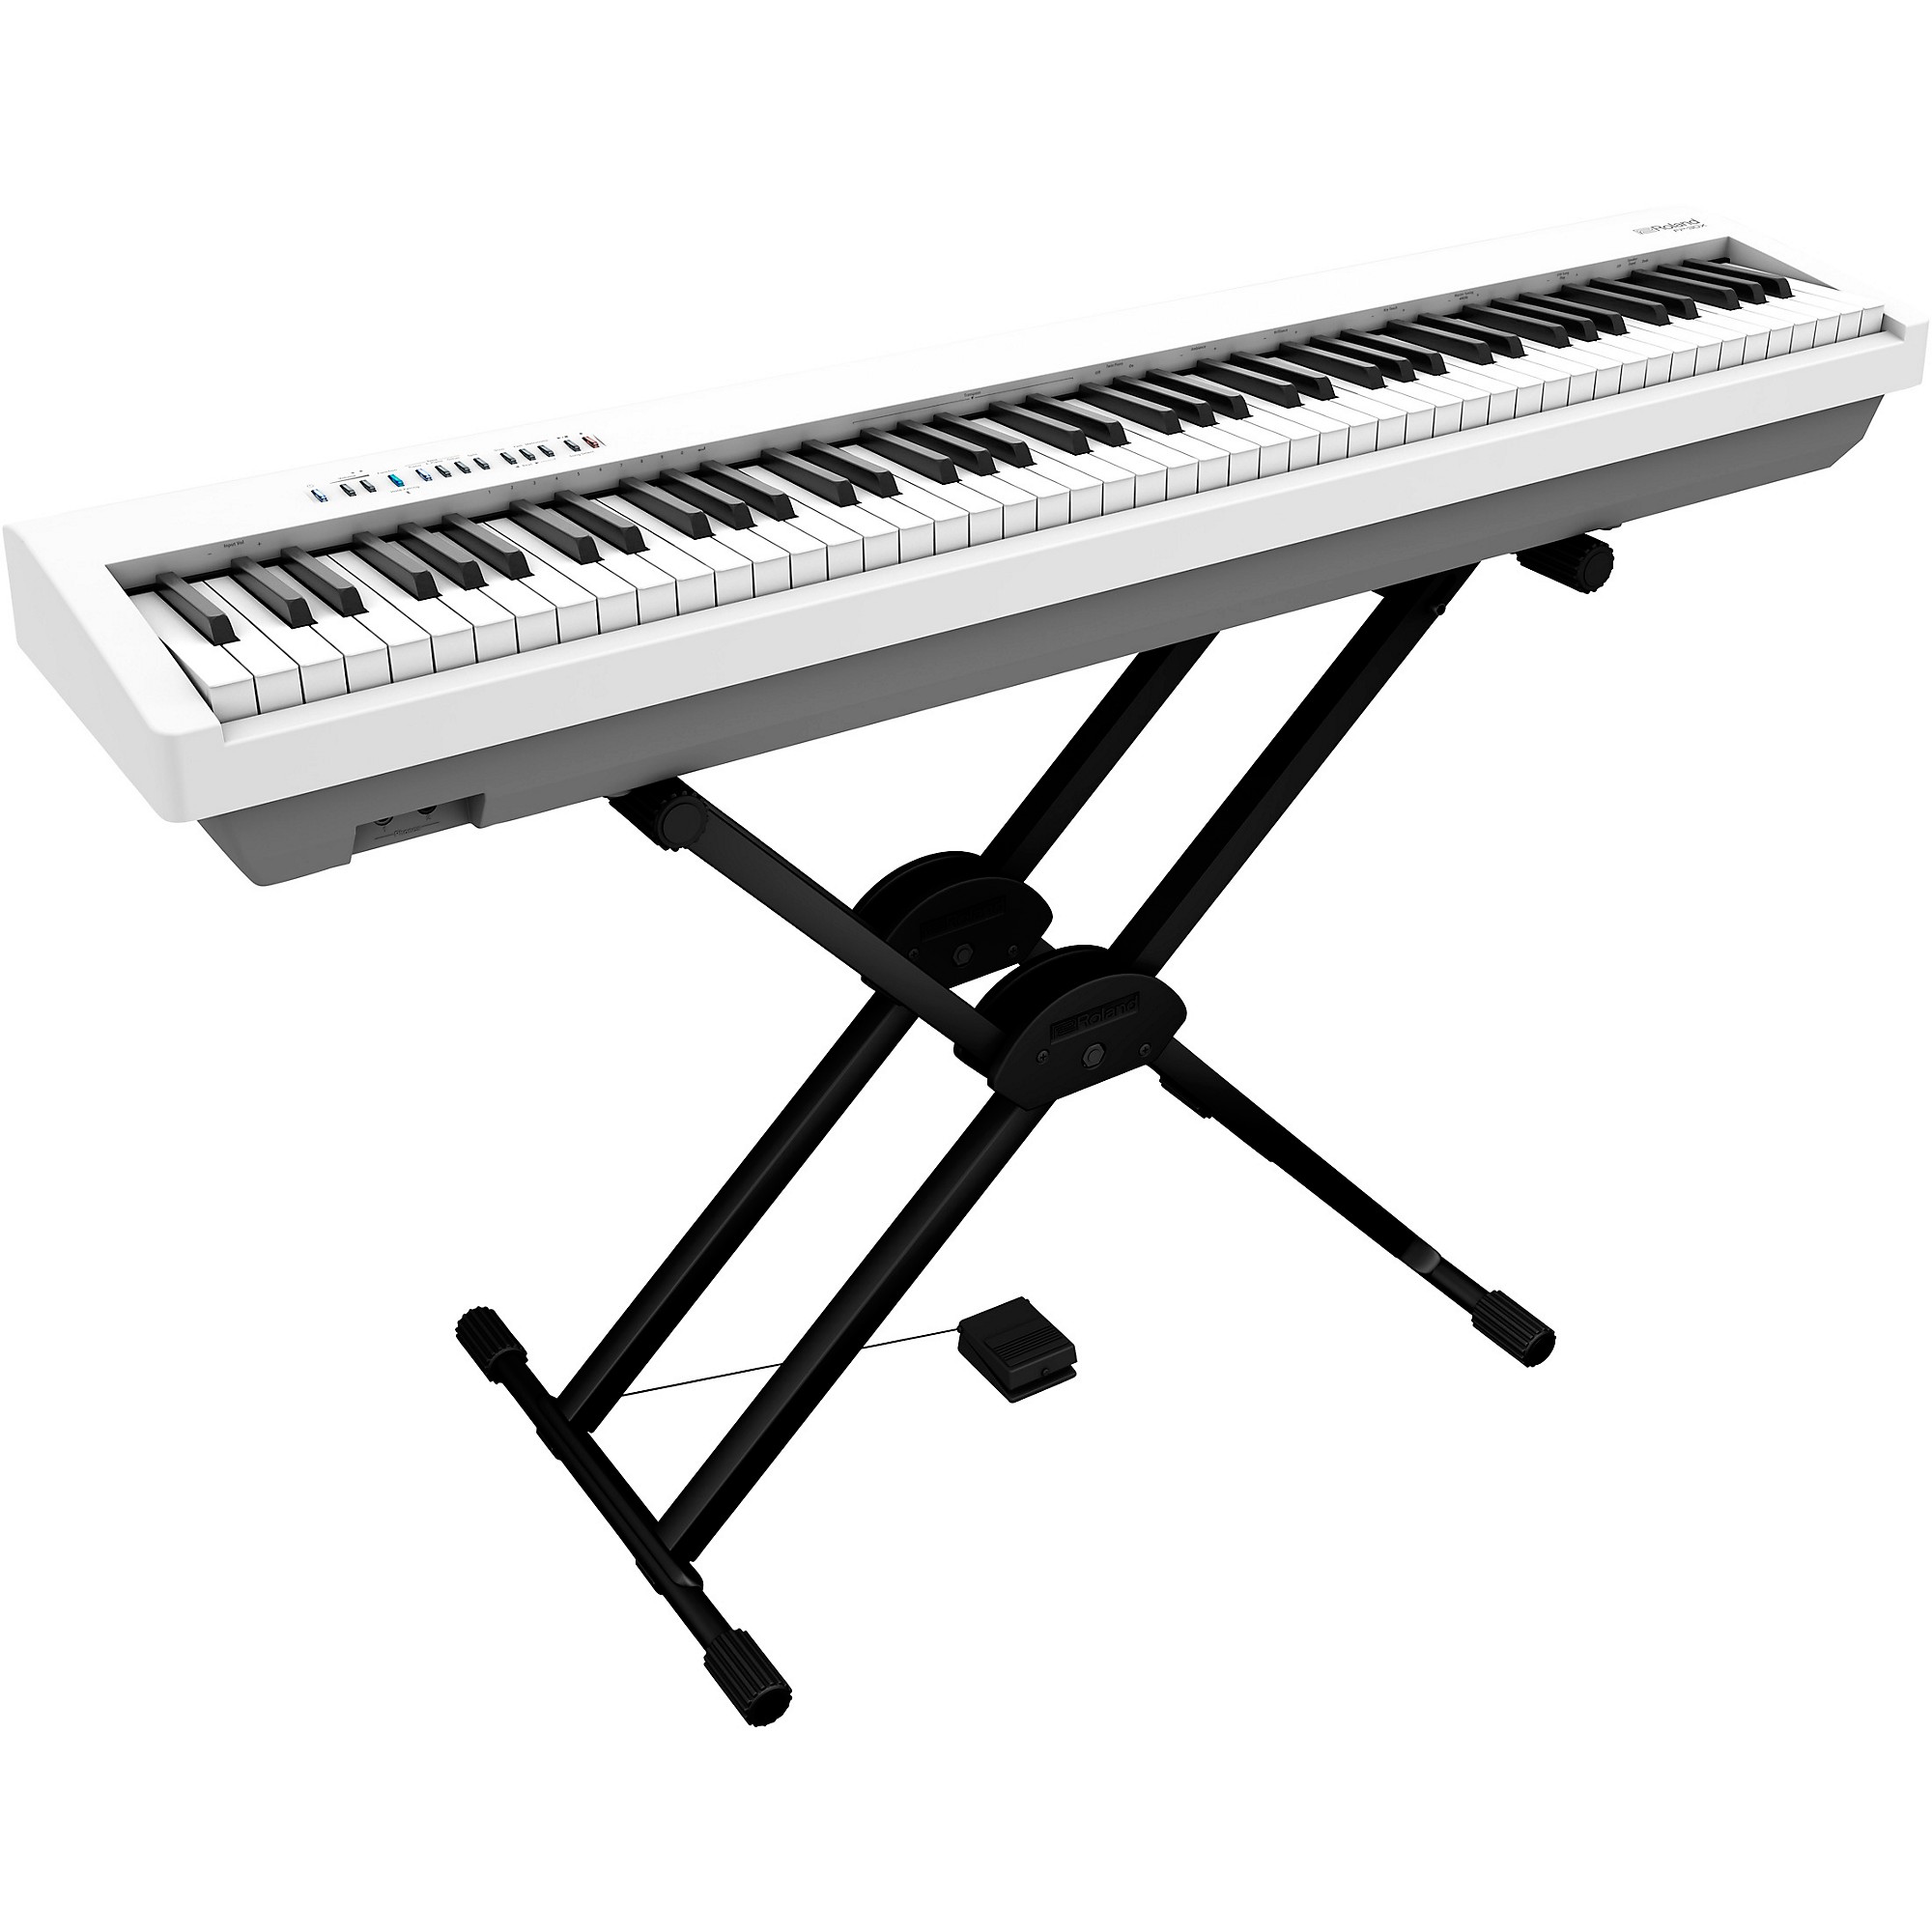 Roland FP-30X piano numérique blanc + stand + pédalier + b